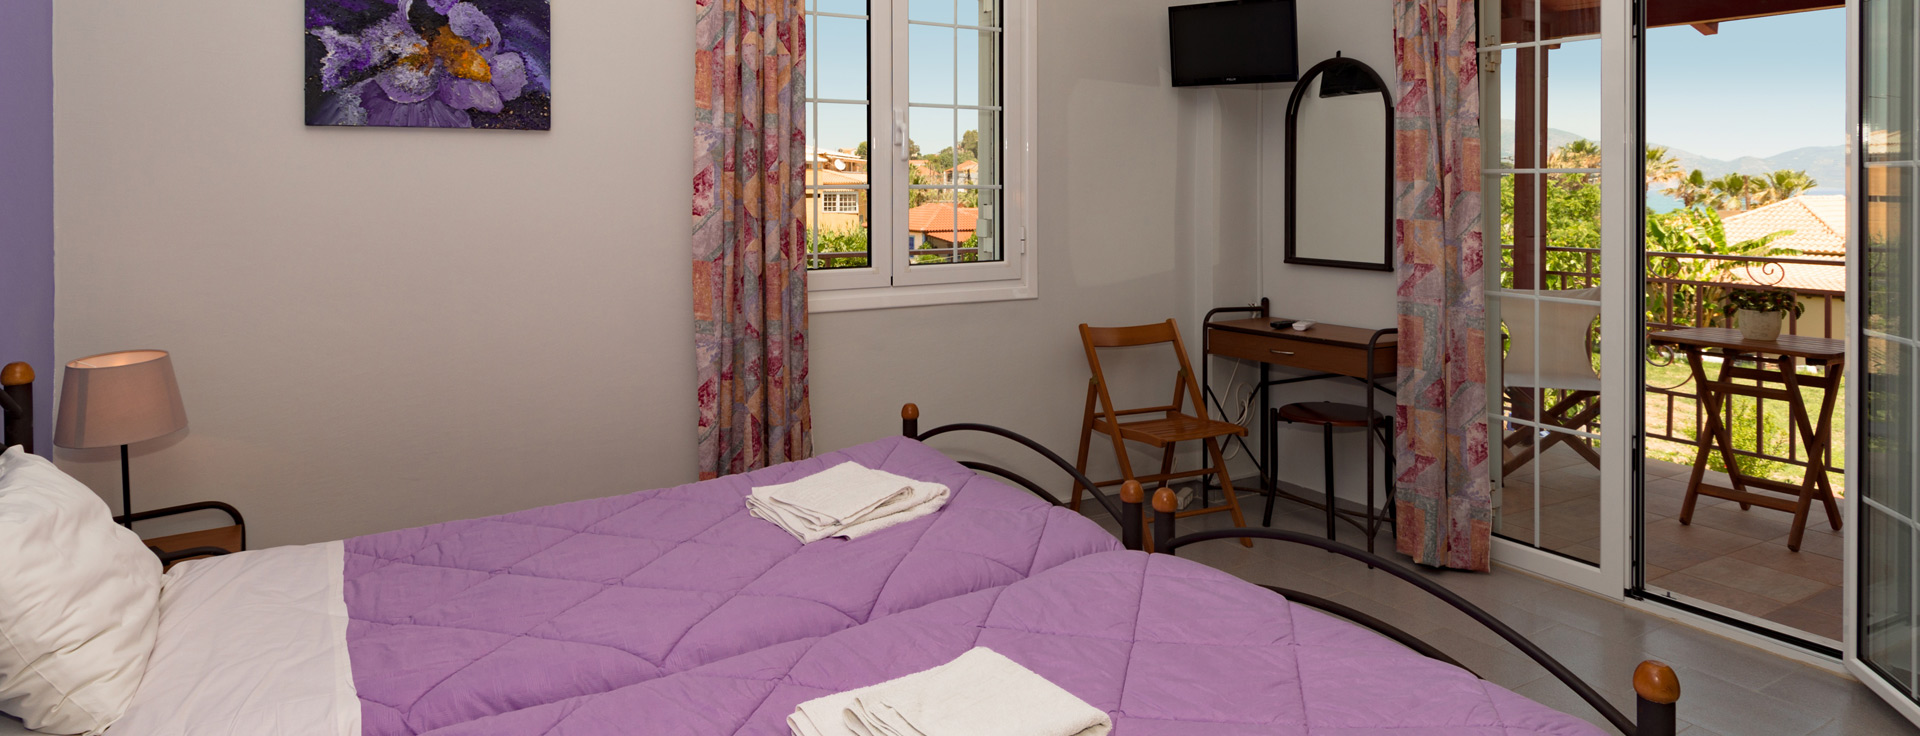 Διαμέρισμα στο Lemonia Accommodations με 3 υπνοδωμάτια